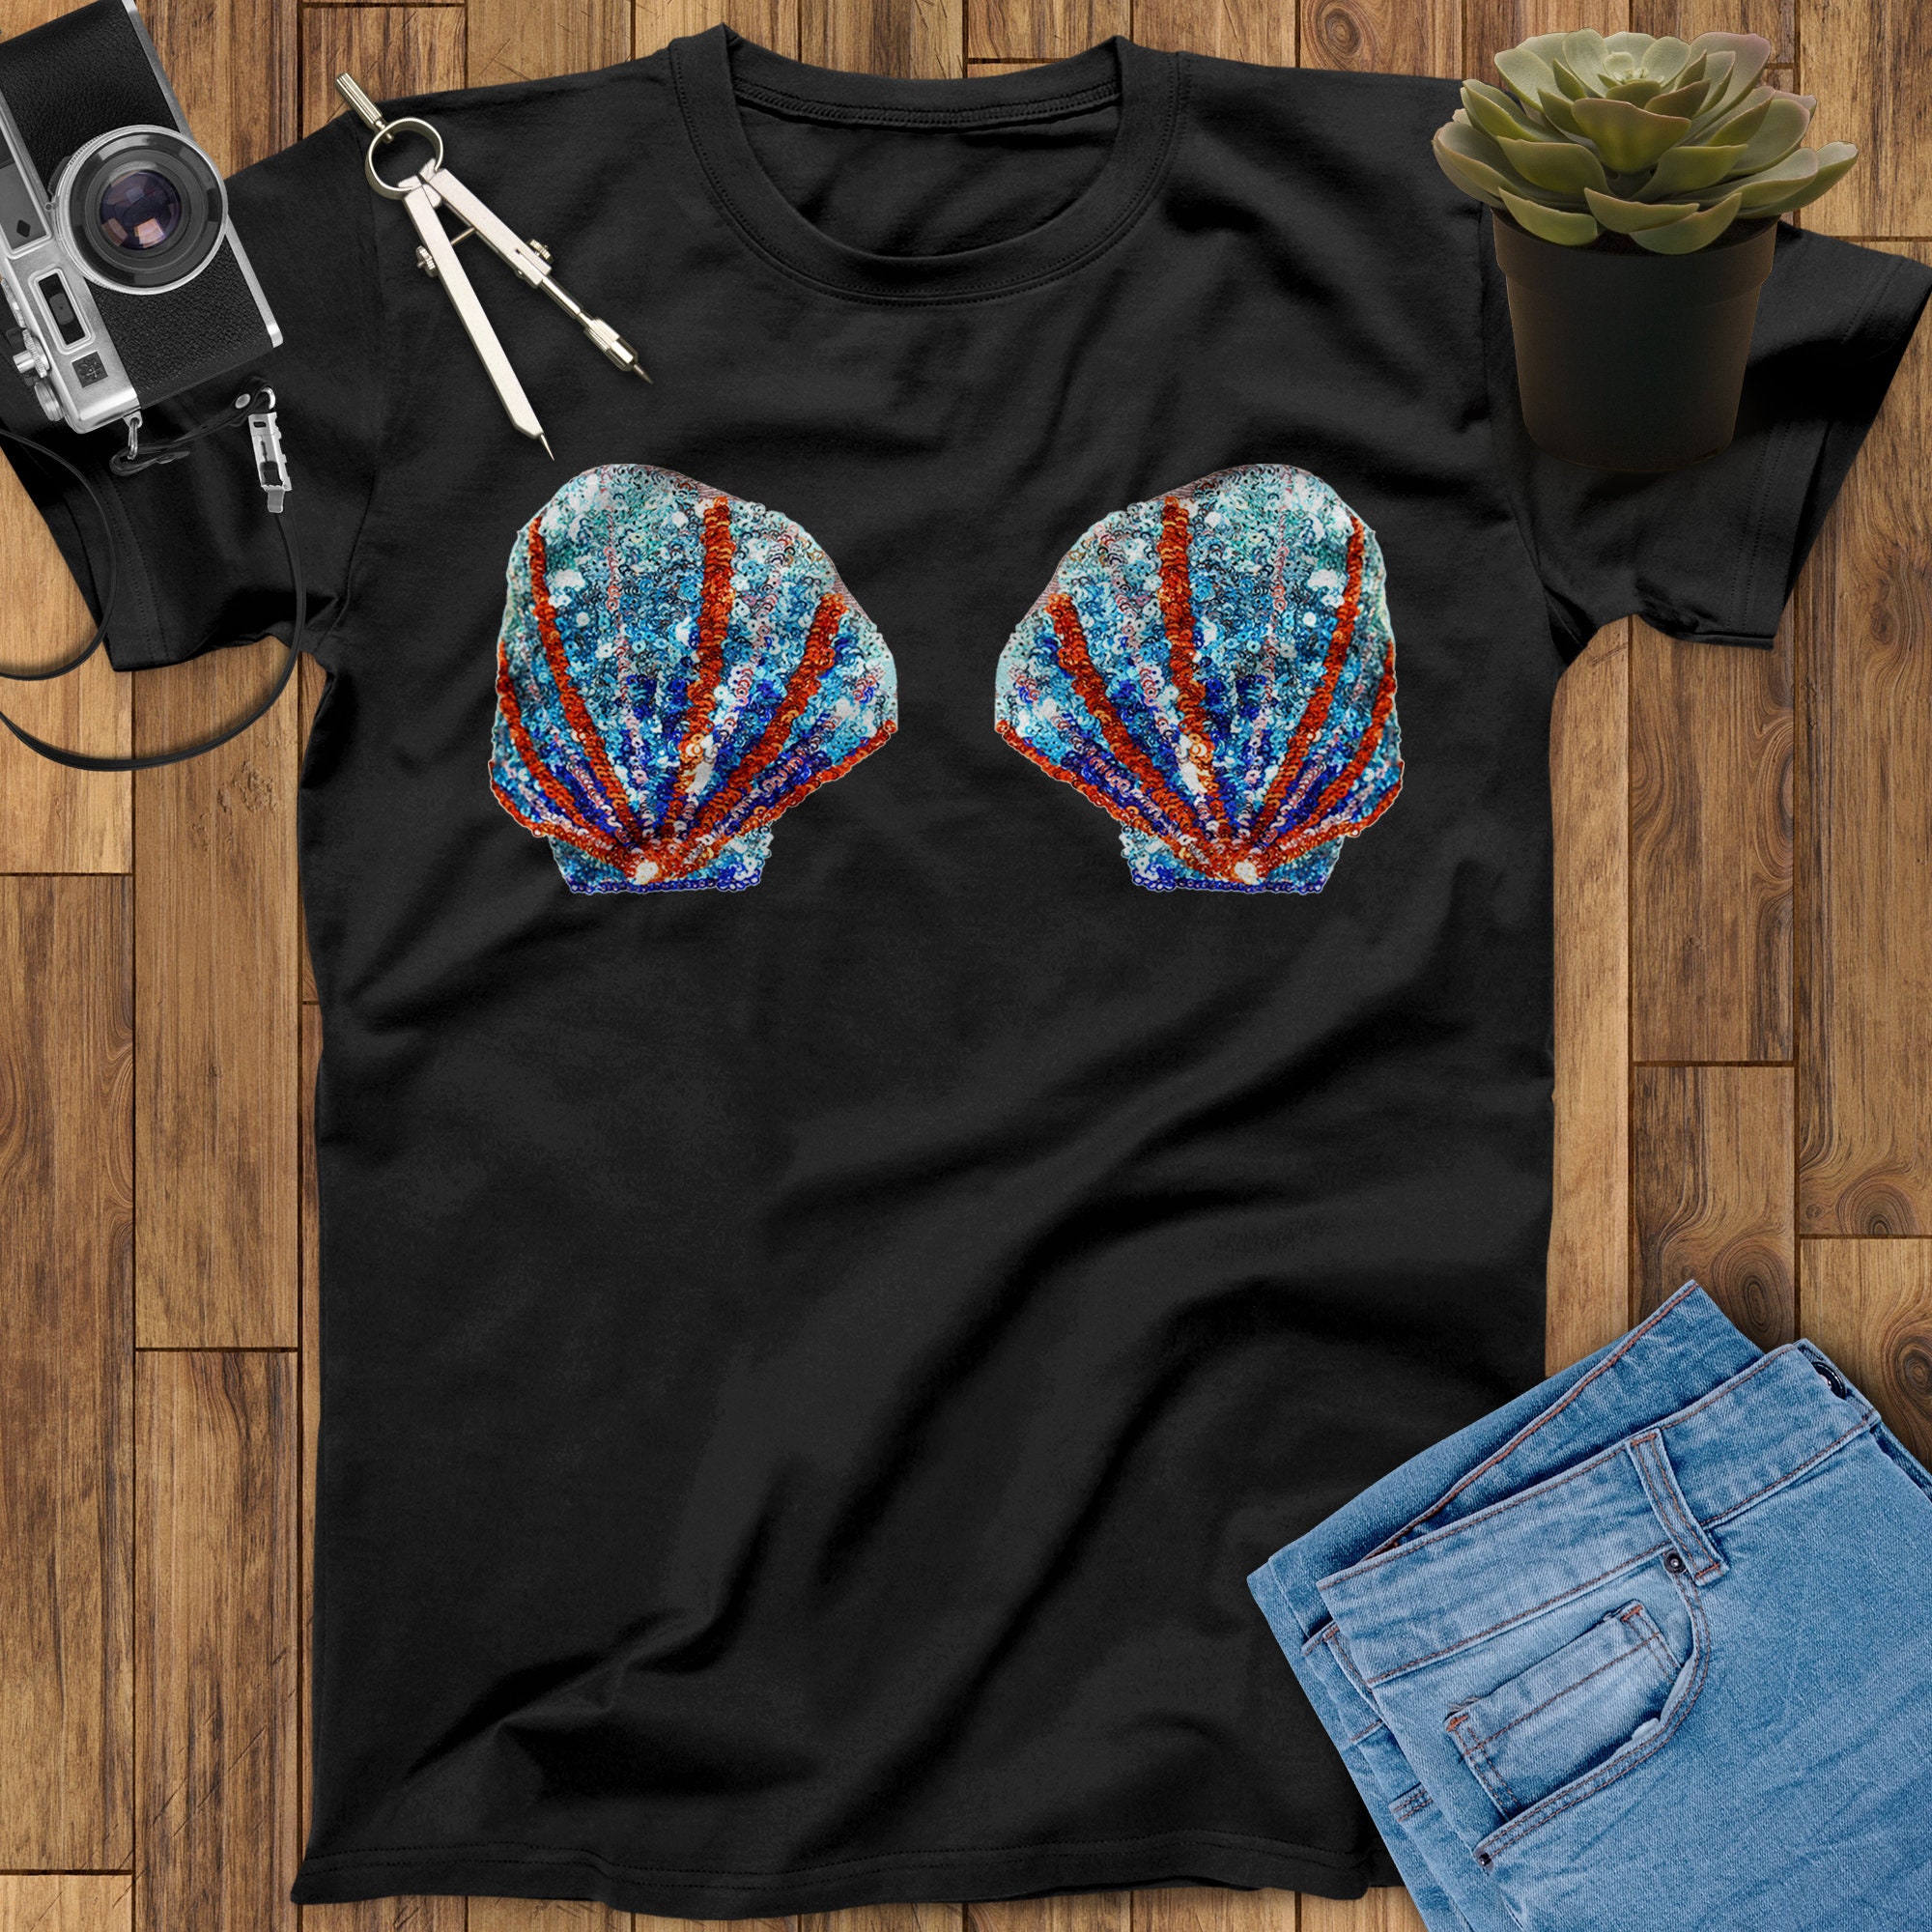 Mermaid Shell T-shirt, Mermaid Seashells, Boob Shirt, Mermaid Sea